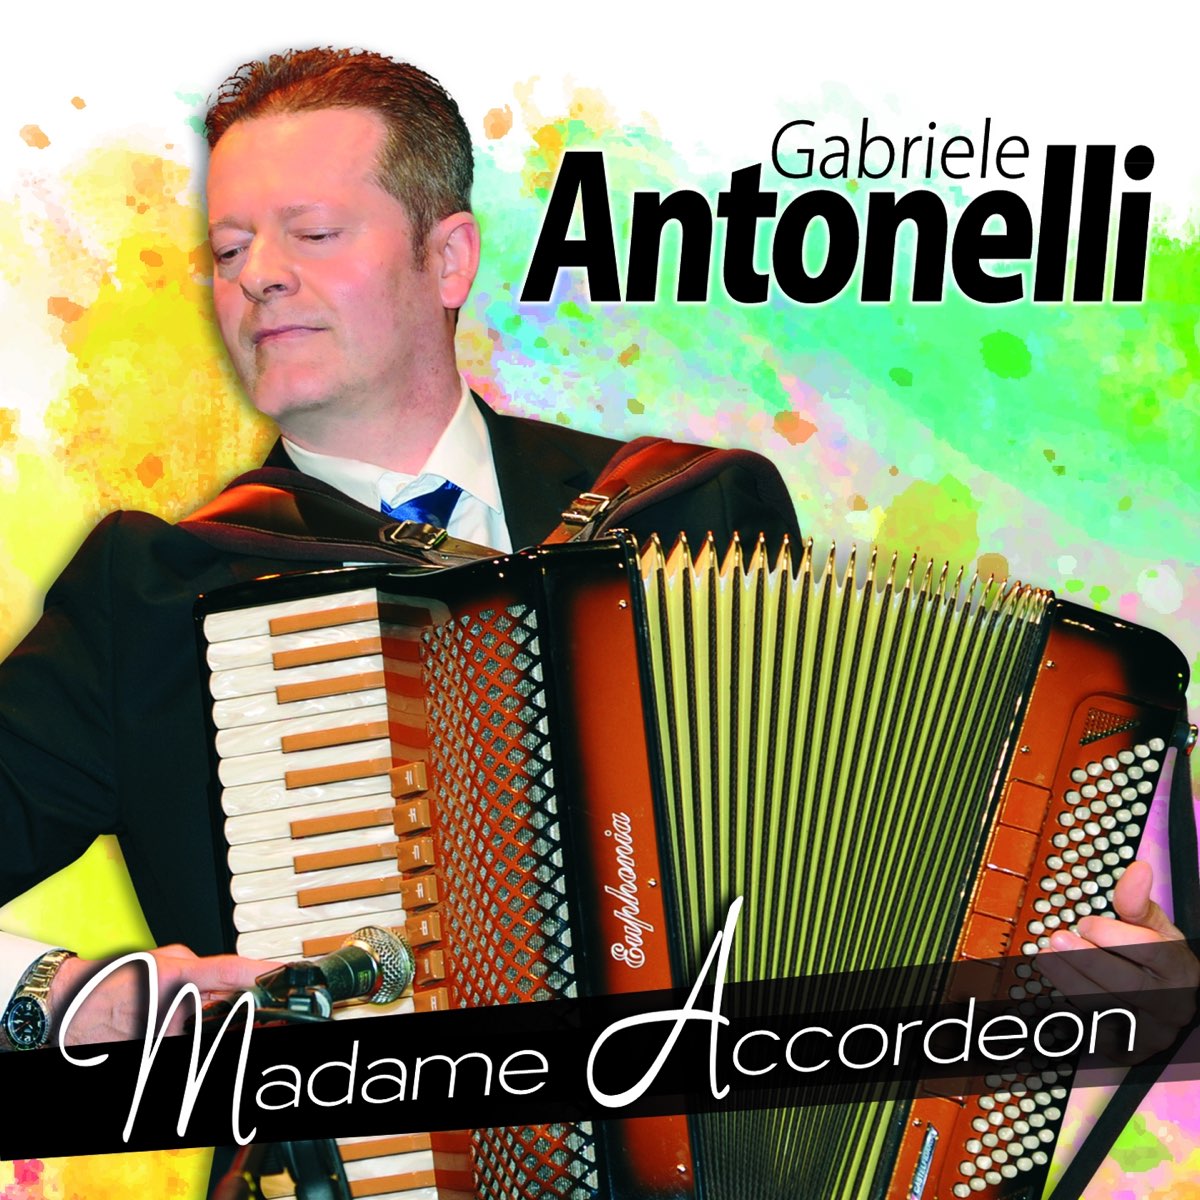 Madame Accordeon - Album by Gabriele Antonelli - Apple Music